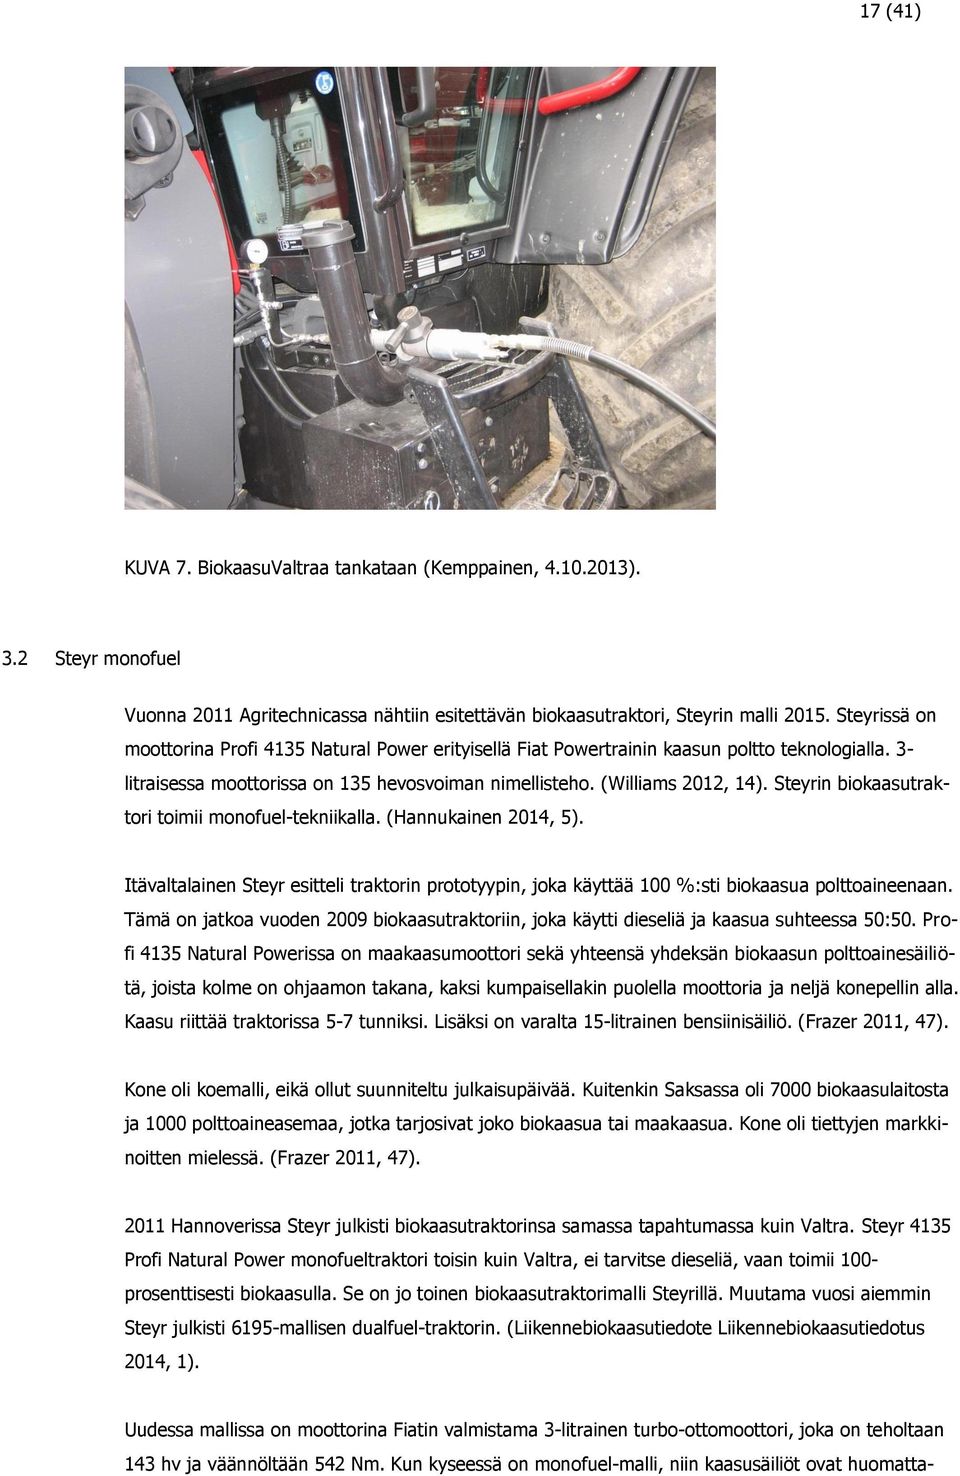 Steyrin biokaasutraktori toimii monofuel-tekniikalla. (Hannukainen 2014, 5). Itävaltalainen Steyr esitteli traktorin prototyypin, joka käyttää 100 %:sti biokaasua polttoaineenaan.